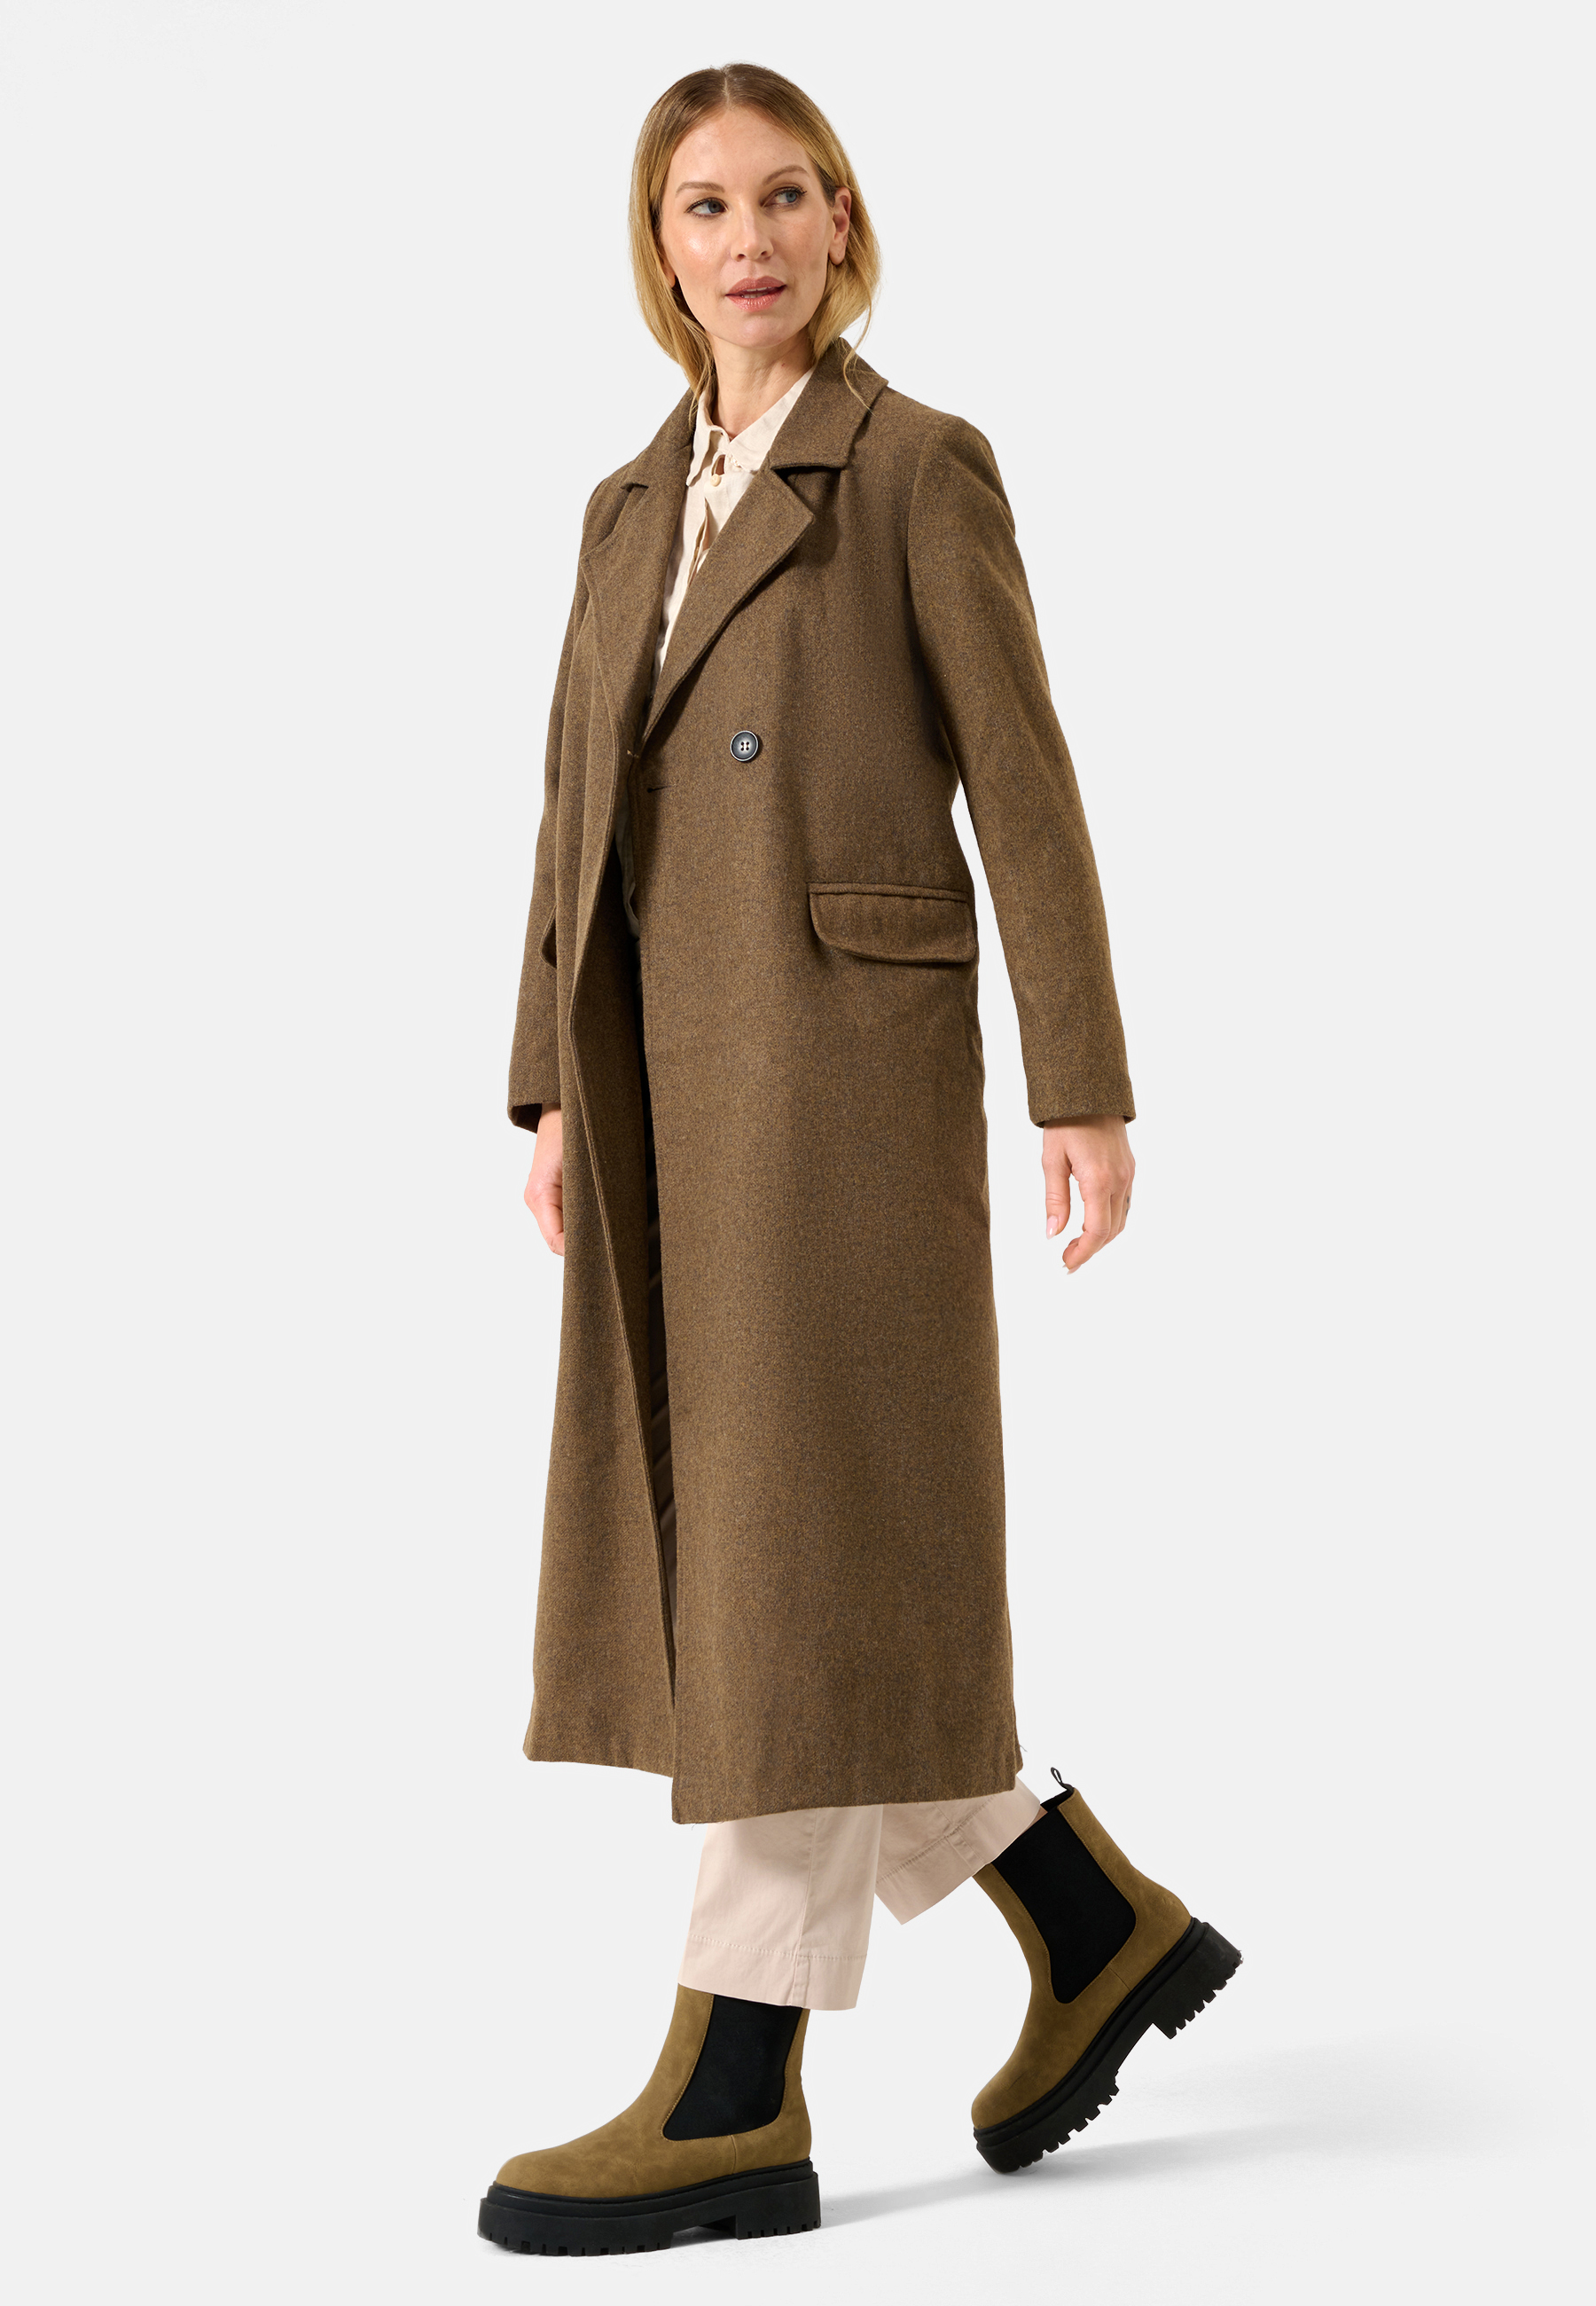 Damen Textil Mantel Alberta in Braun von Ricano, Detailansicht 7/8 Lang, Einklapp Tasche links und rechts, Reversekragen mit V-Ausschnitt, Knopfverschluss oben